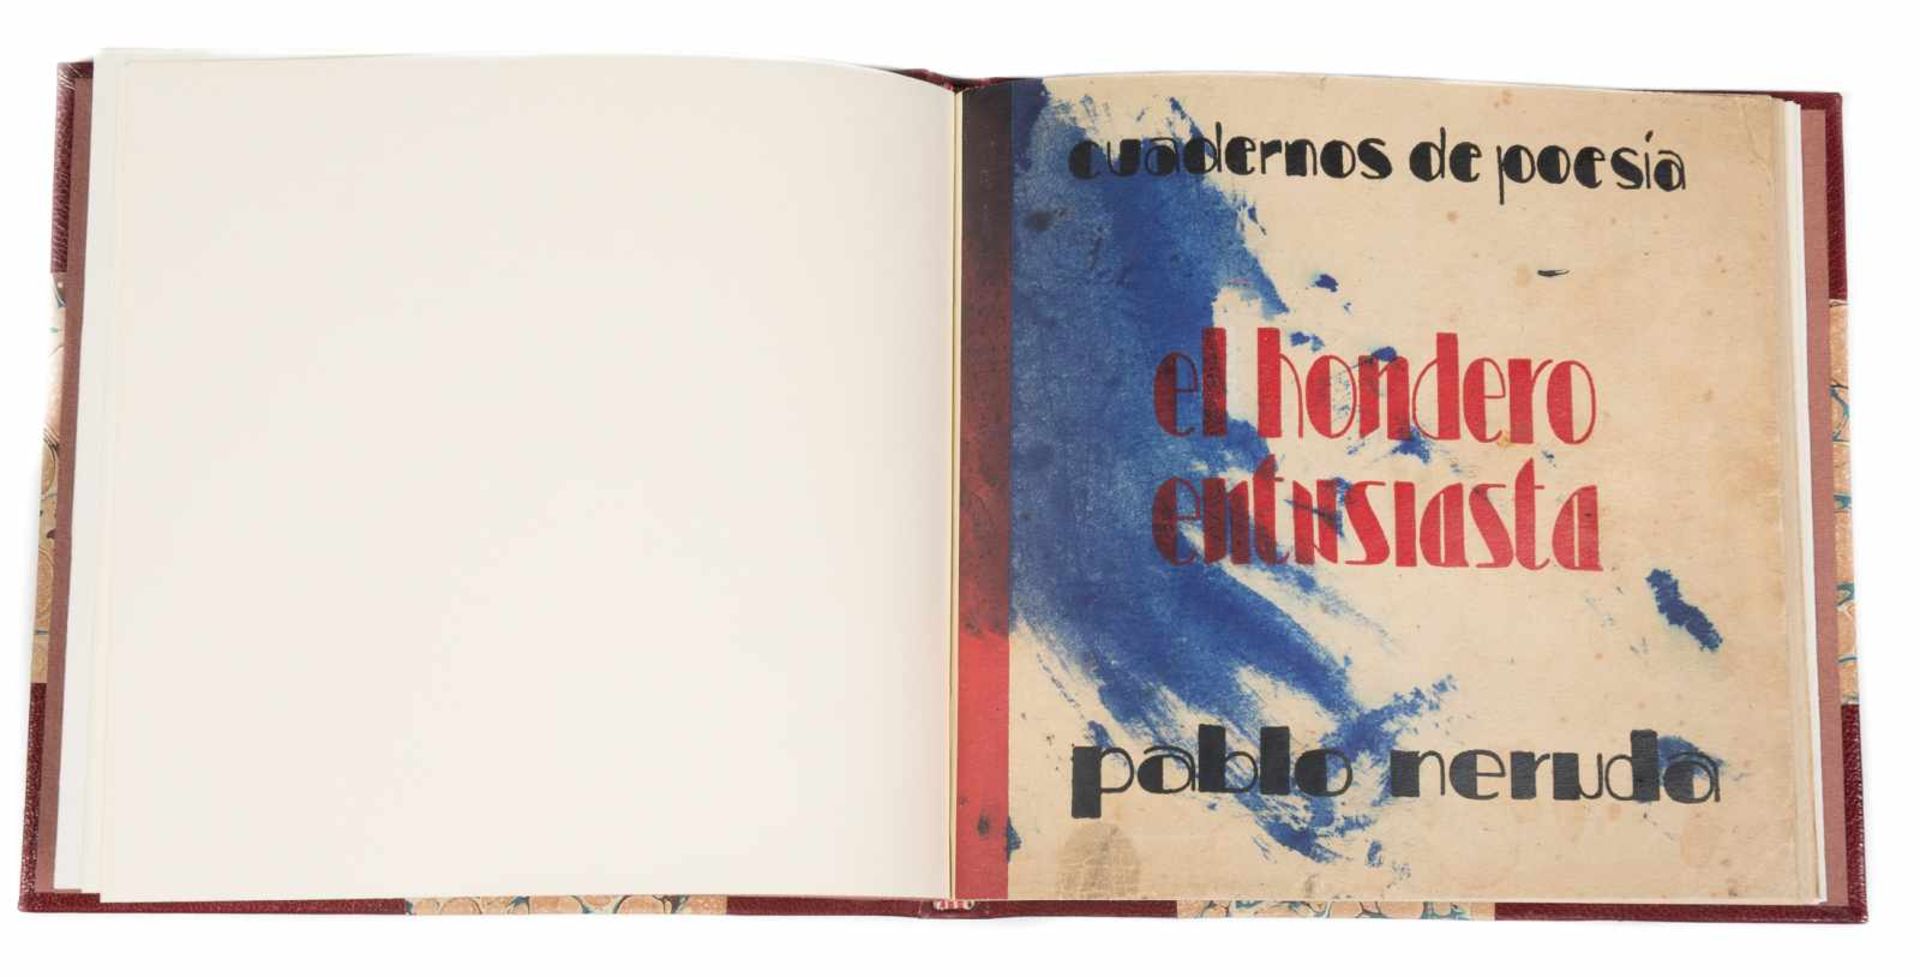 Neruda, Pablo. "El hondero entusiasta". 1st edition. Santiago de Chile. Published by Imprenta